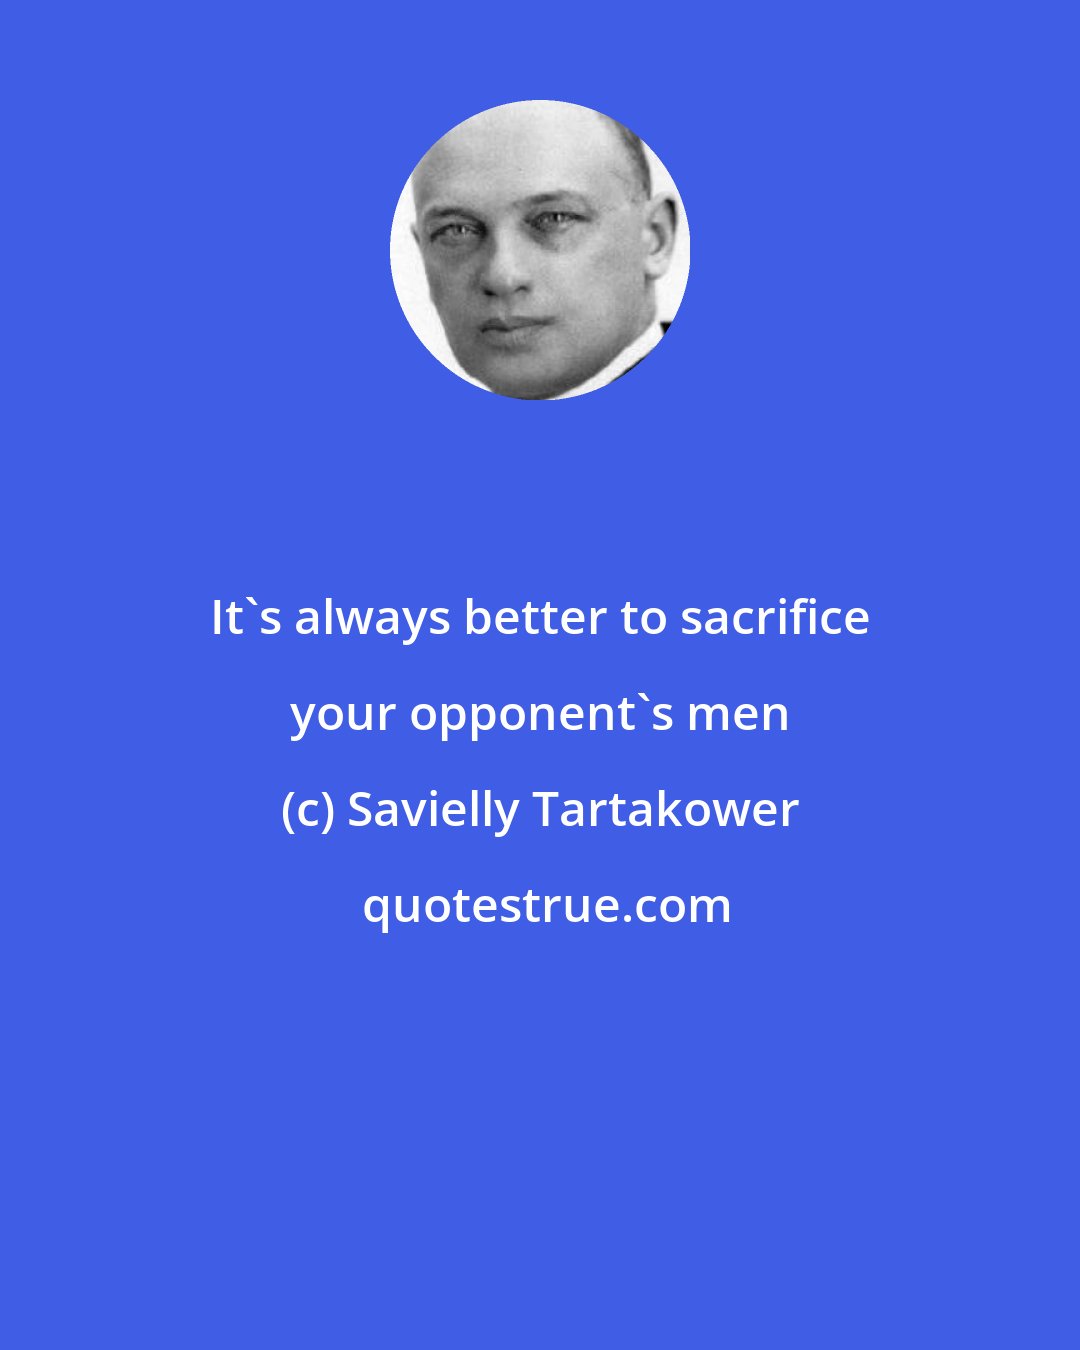 Savielly Tartakower: It's always better to sacrifice your opponent's men